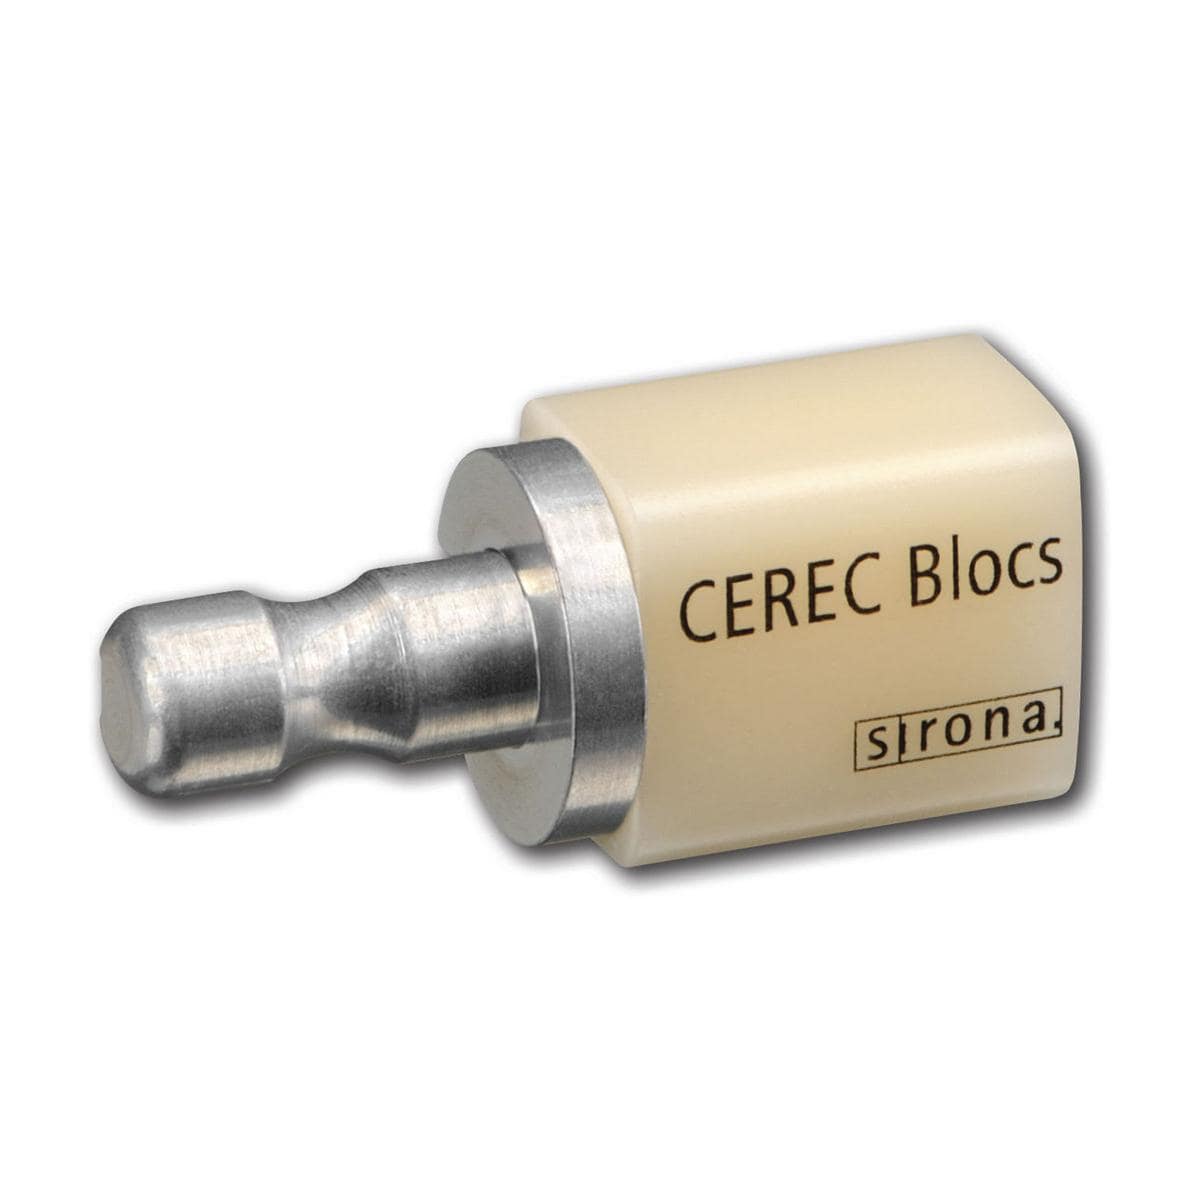 CEREC Blocs C14 - C3C, 8 stuks